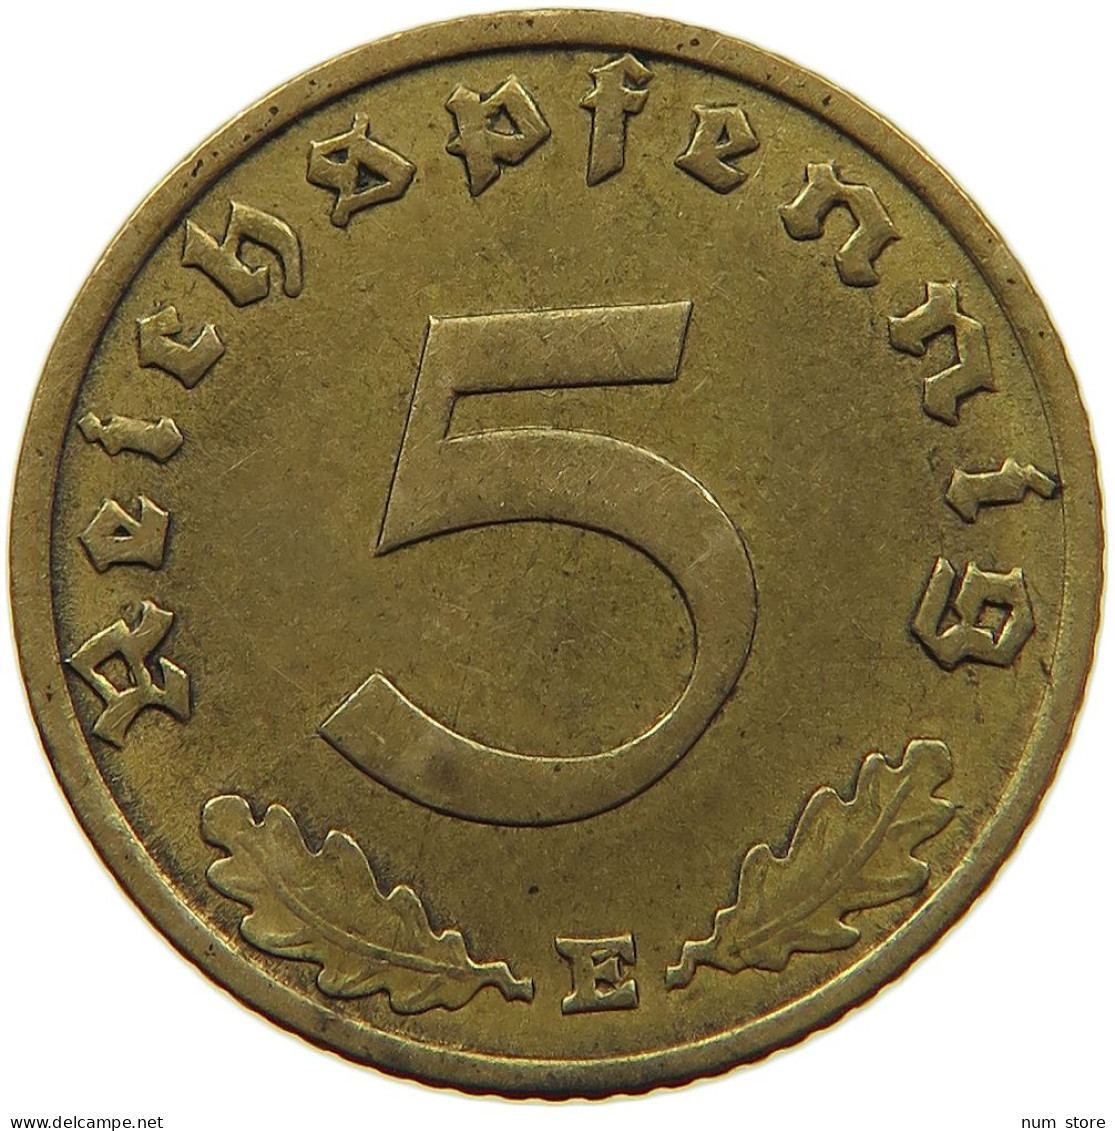 GERMANY 5 REICHSPFENNIG 1937 E #s091 0579 - 5 Reichspfennig